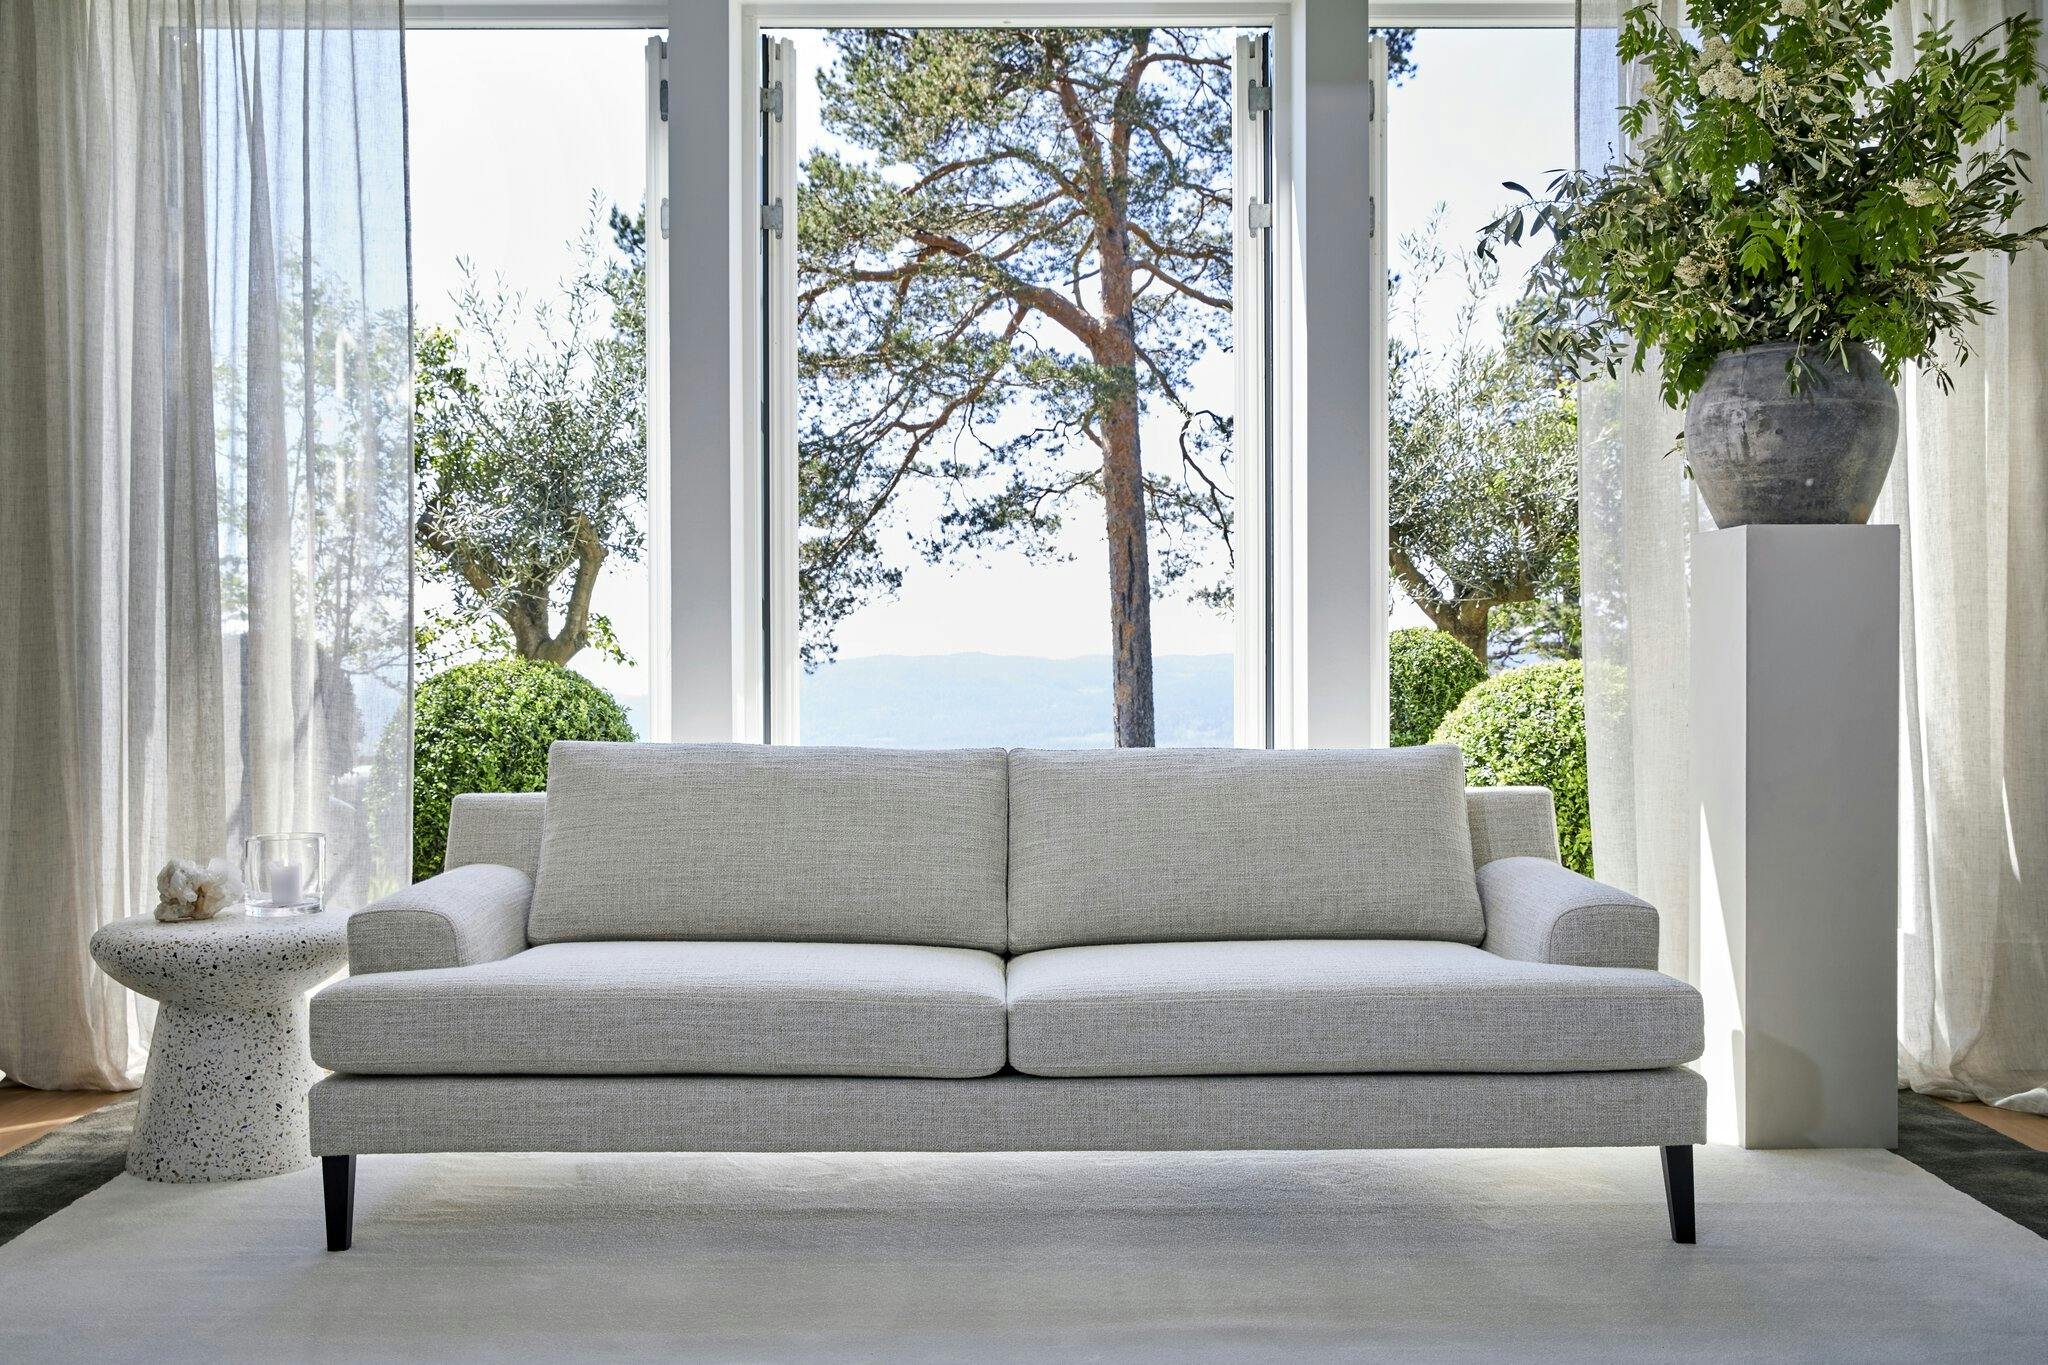 Sussex sofa